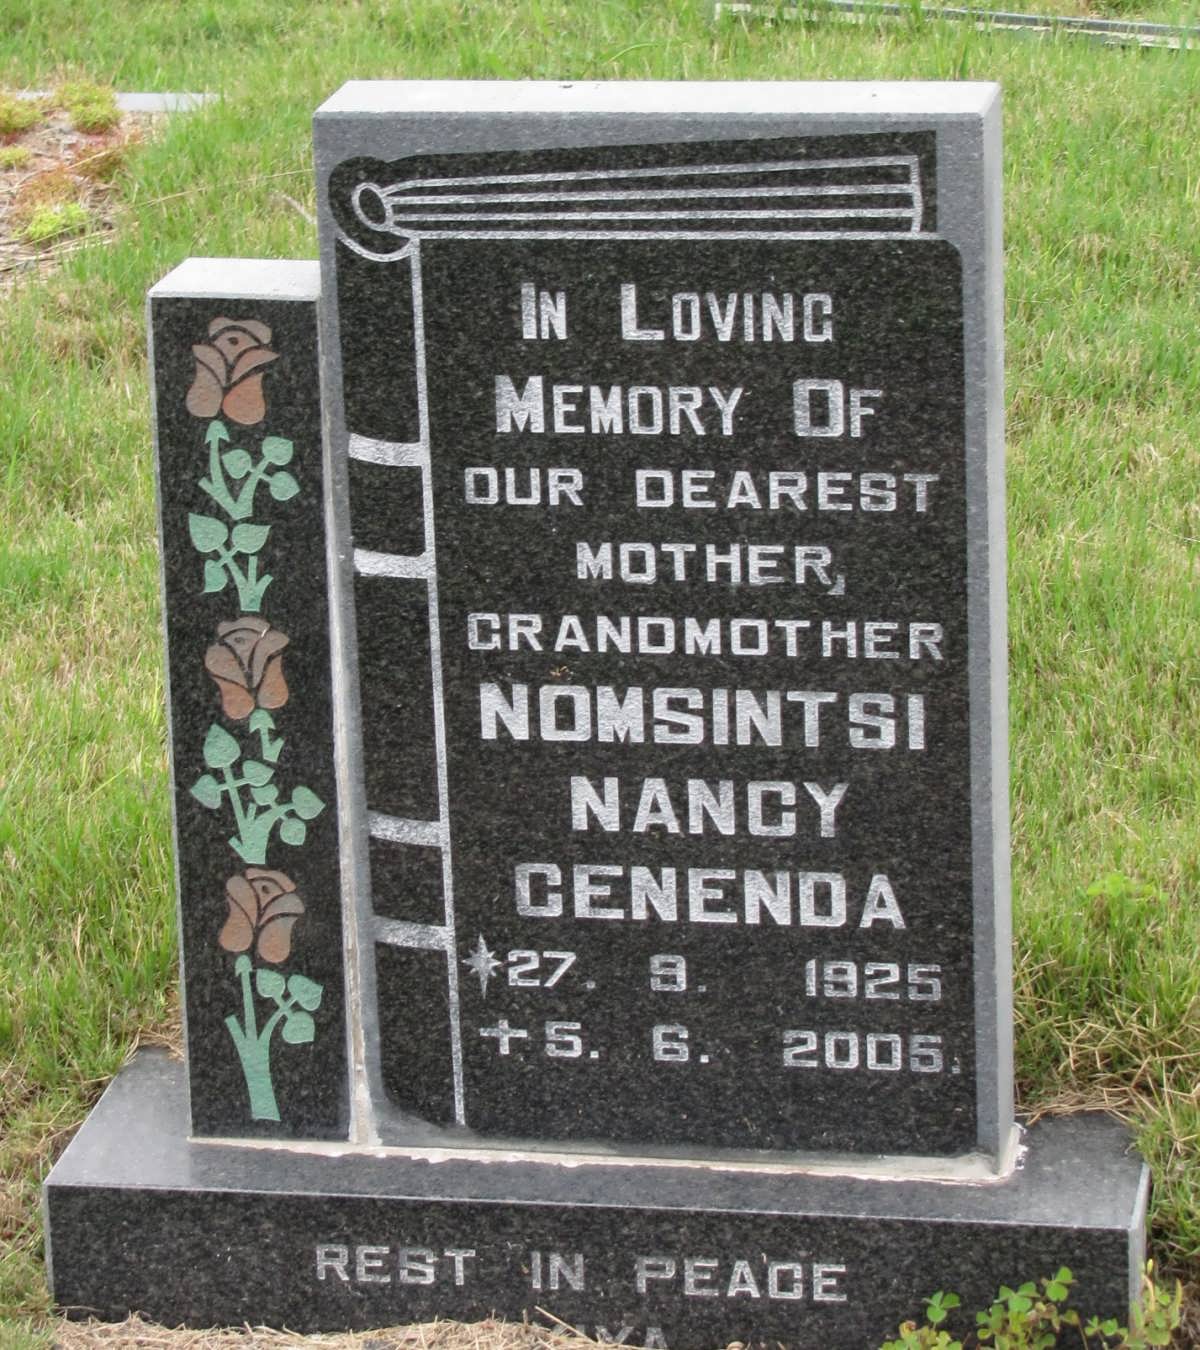 CENENDA Nomsintsi Nancy 1925-2005